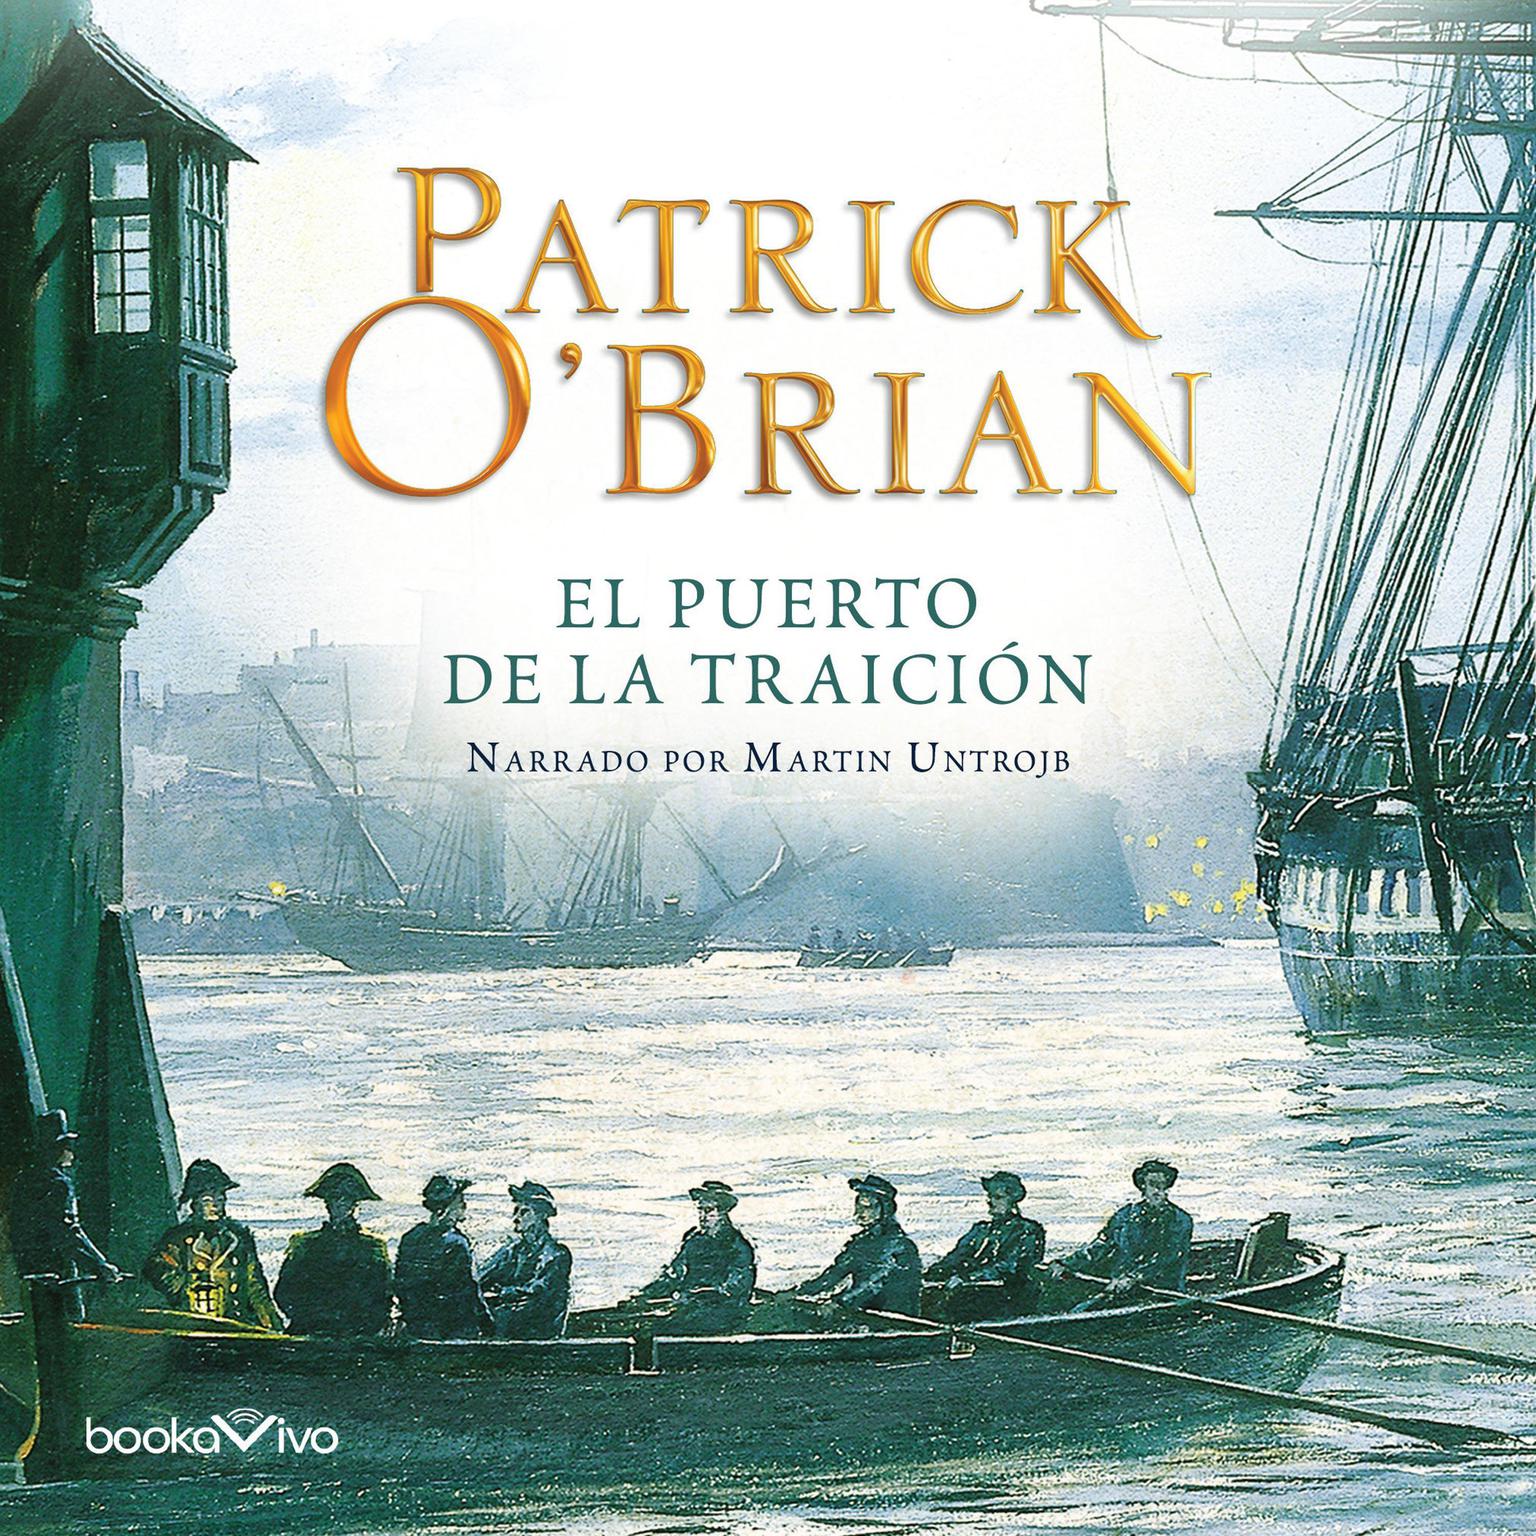 El Puerto de la Traicion (Treasons Harbour) Audiobook, by Patrick O'Brian